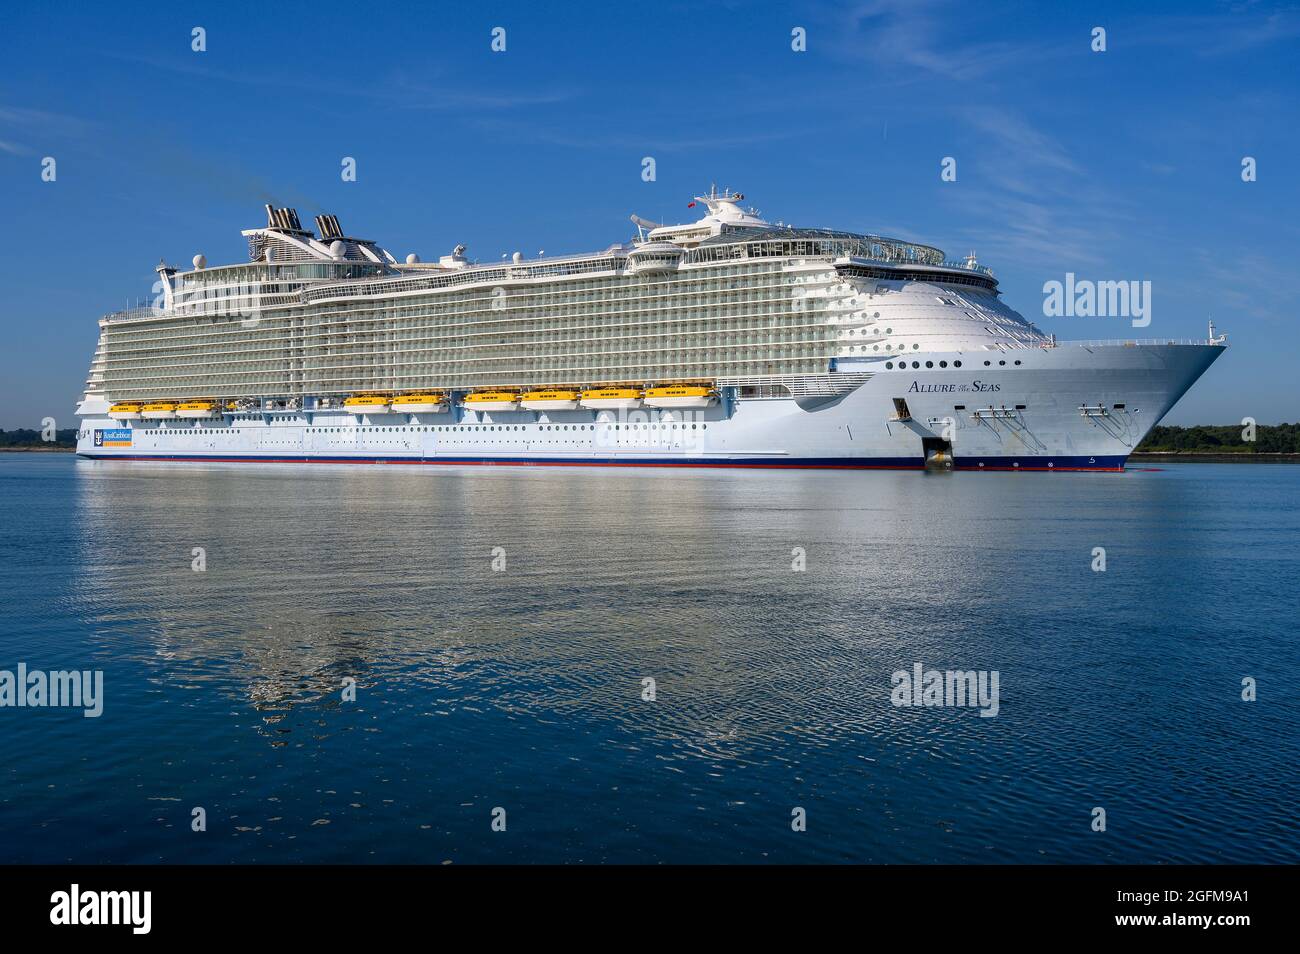 Allure of the Seas, betrieben von Royal Caribbean International, ist eines der größten Kreuzschiffe der Welt - Juli 2020. Stockfoto